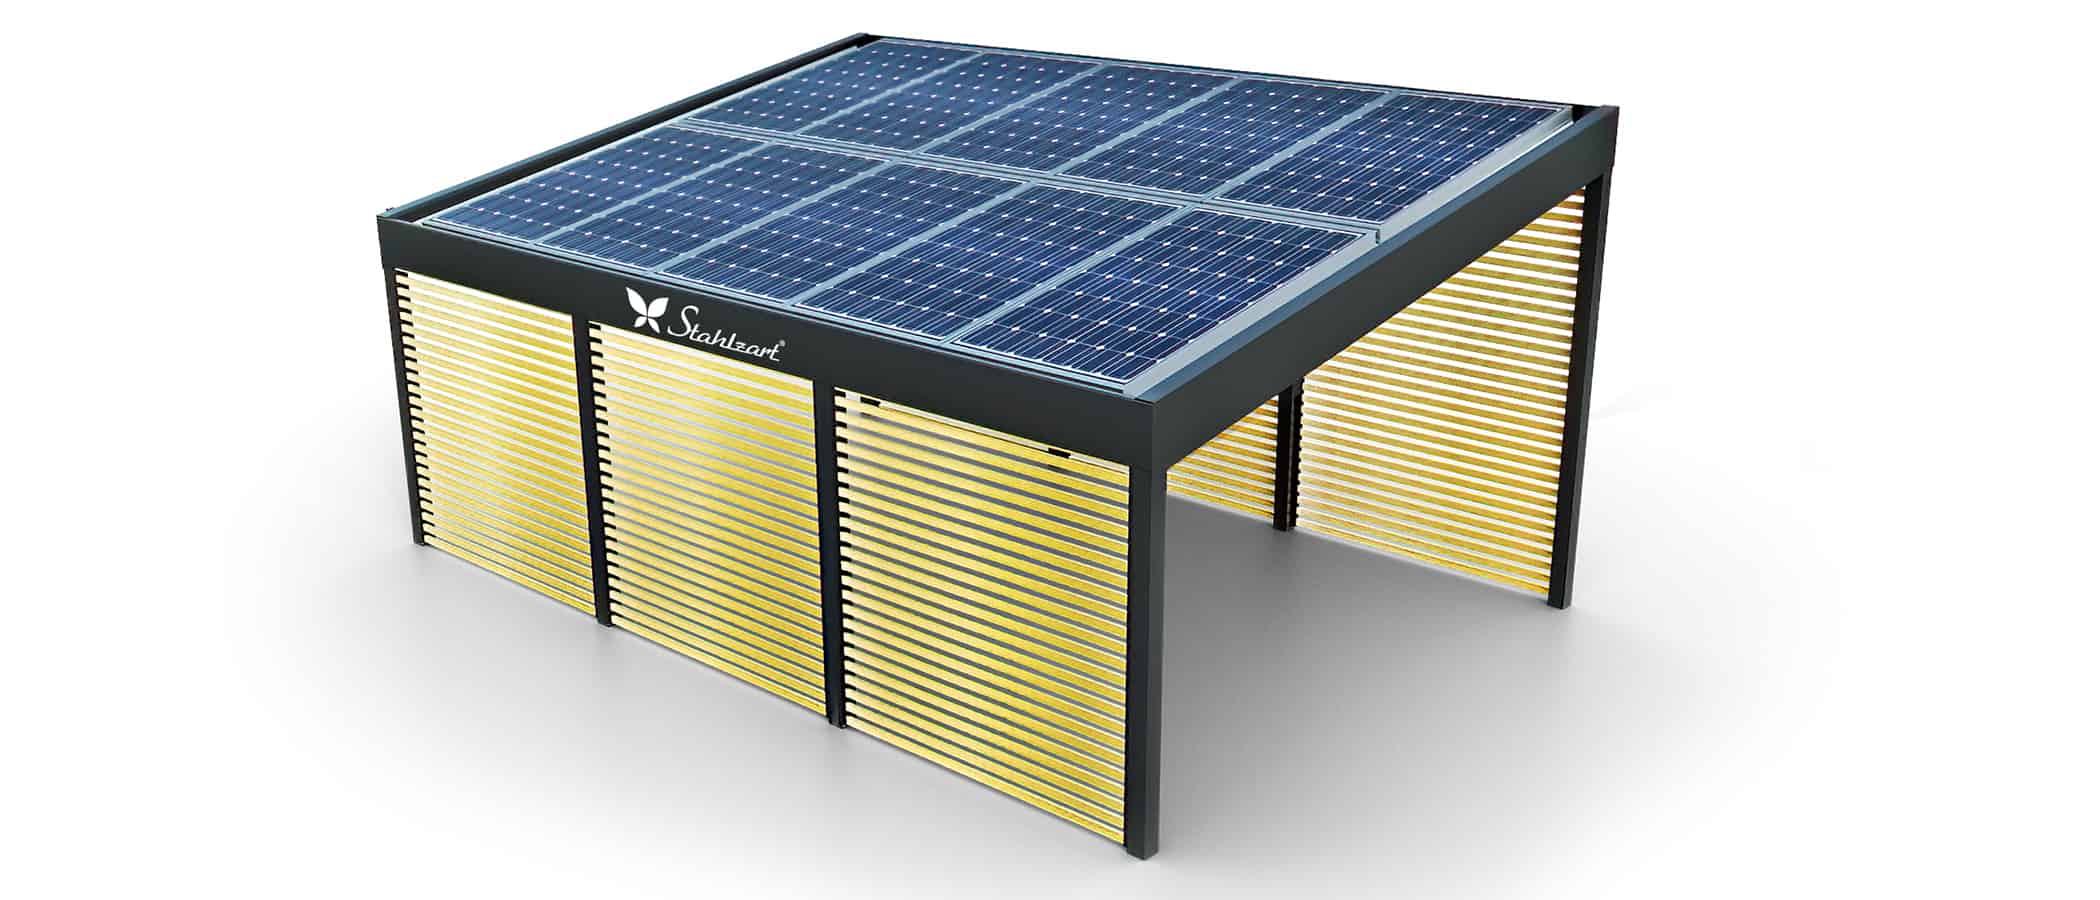 solar-carport-mit-schraegdach-solar-carports-fuer-e-fahrzeuge-pv-anlage-solarcarport-strom-photovoltaikanlage-carportdach-stahlcarport-metall-holz-sibirische-laerche-wandverkleidung-stahlzart